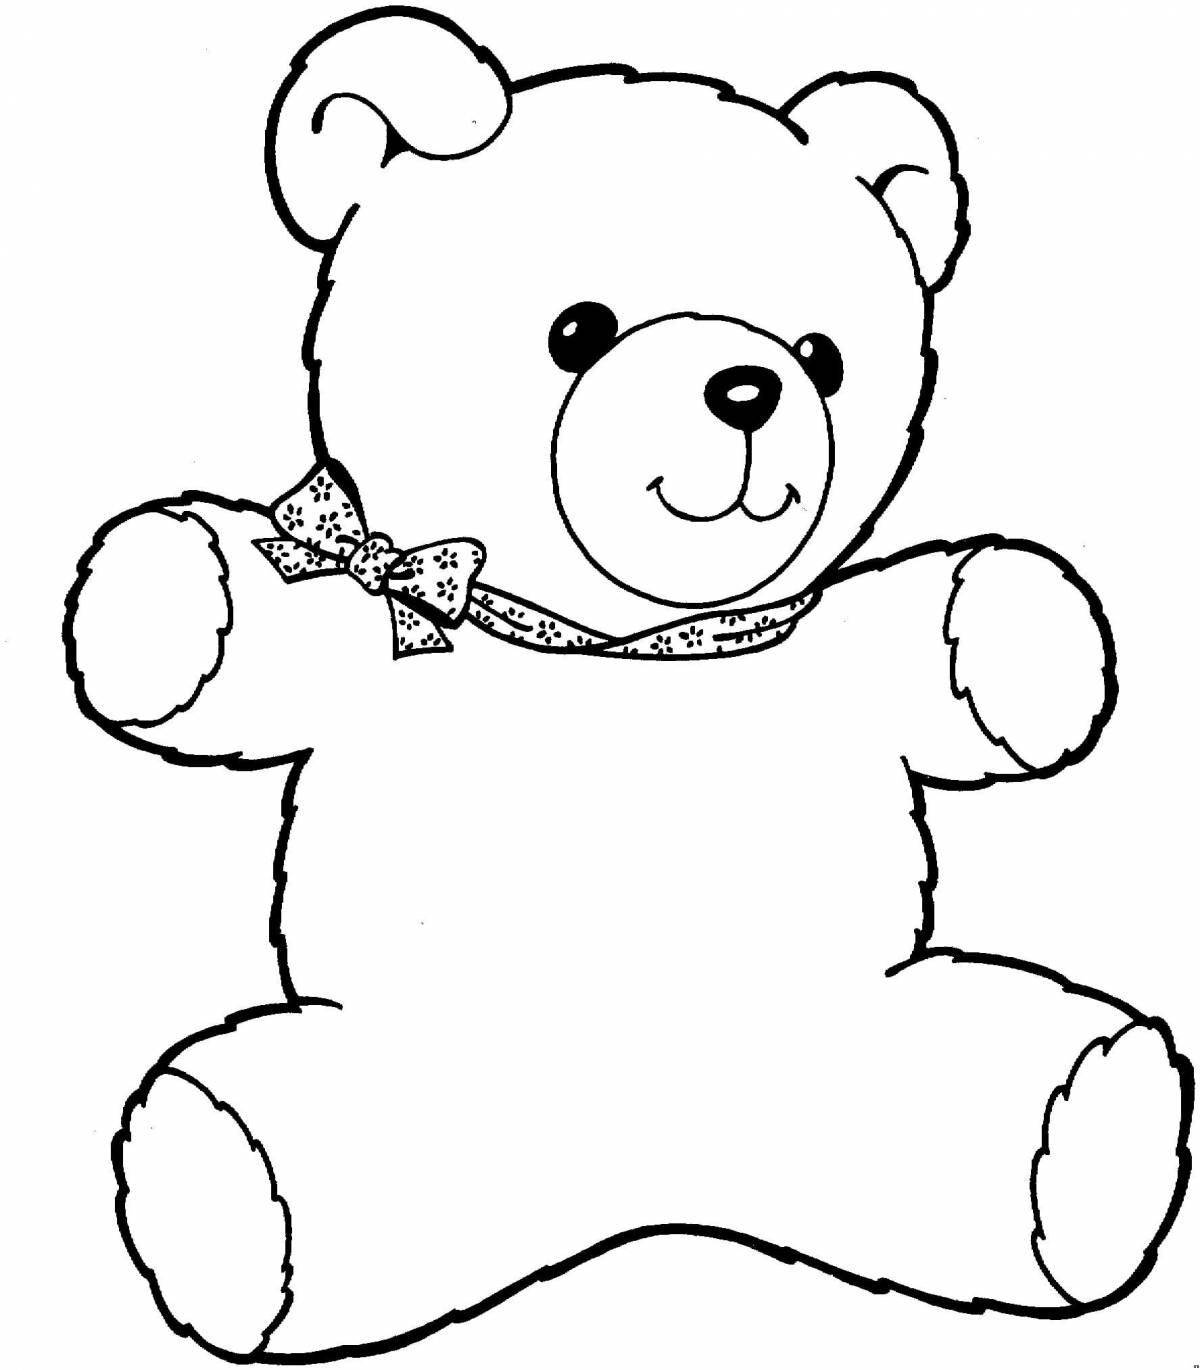 Fancy teddy bear pattern for kids